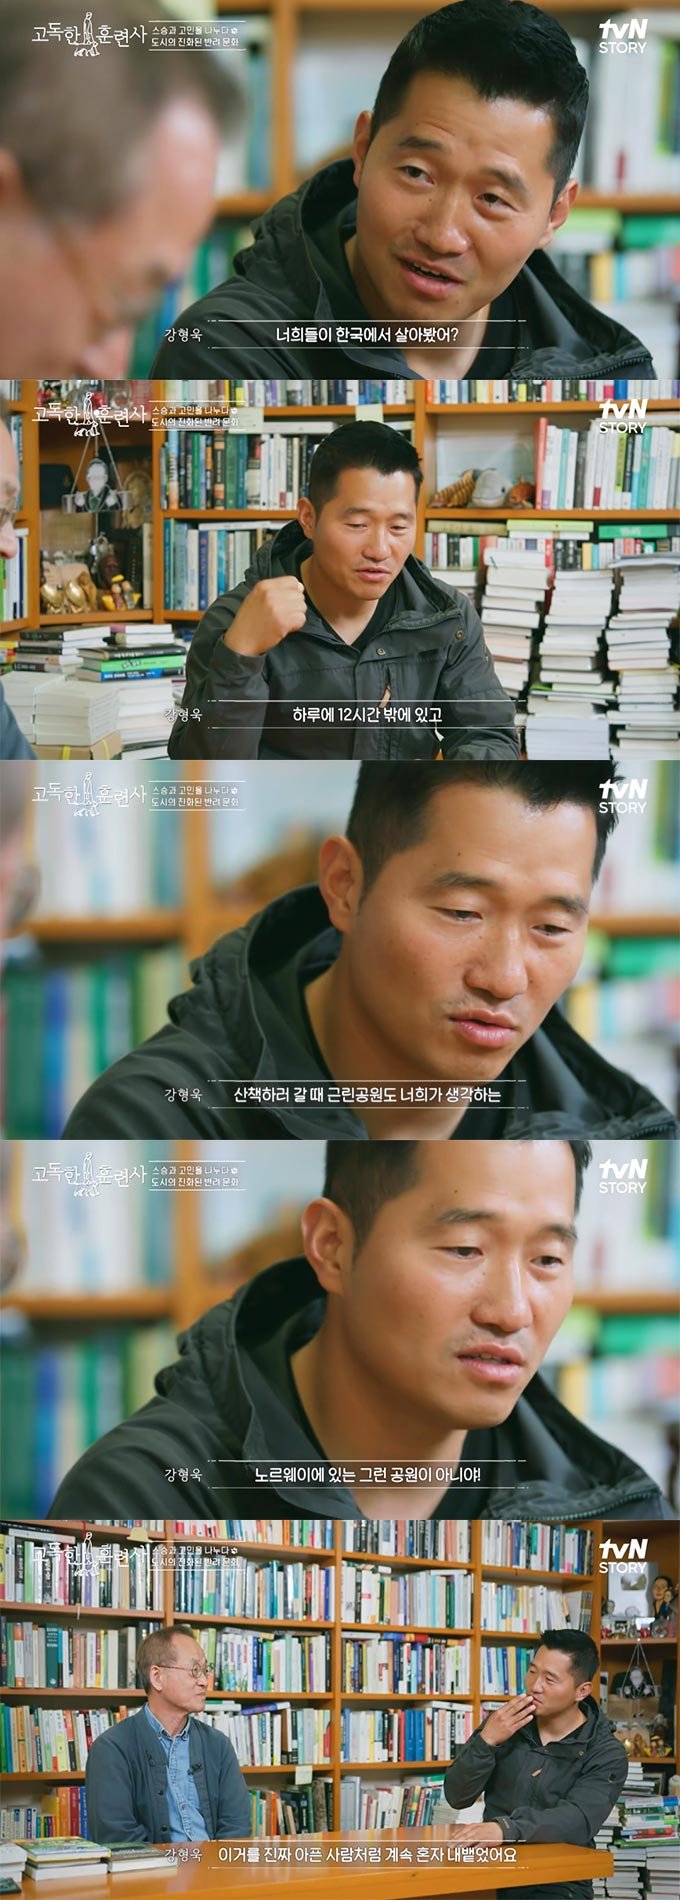 /사진=tvN STORY &#039;고독한 훈련사&#039; 방송 화면